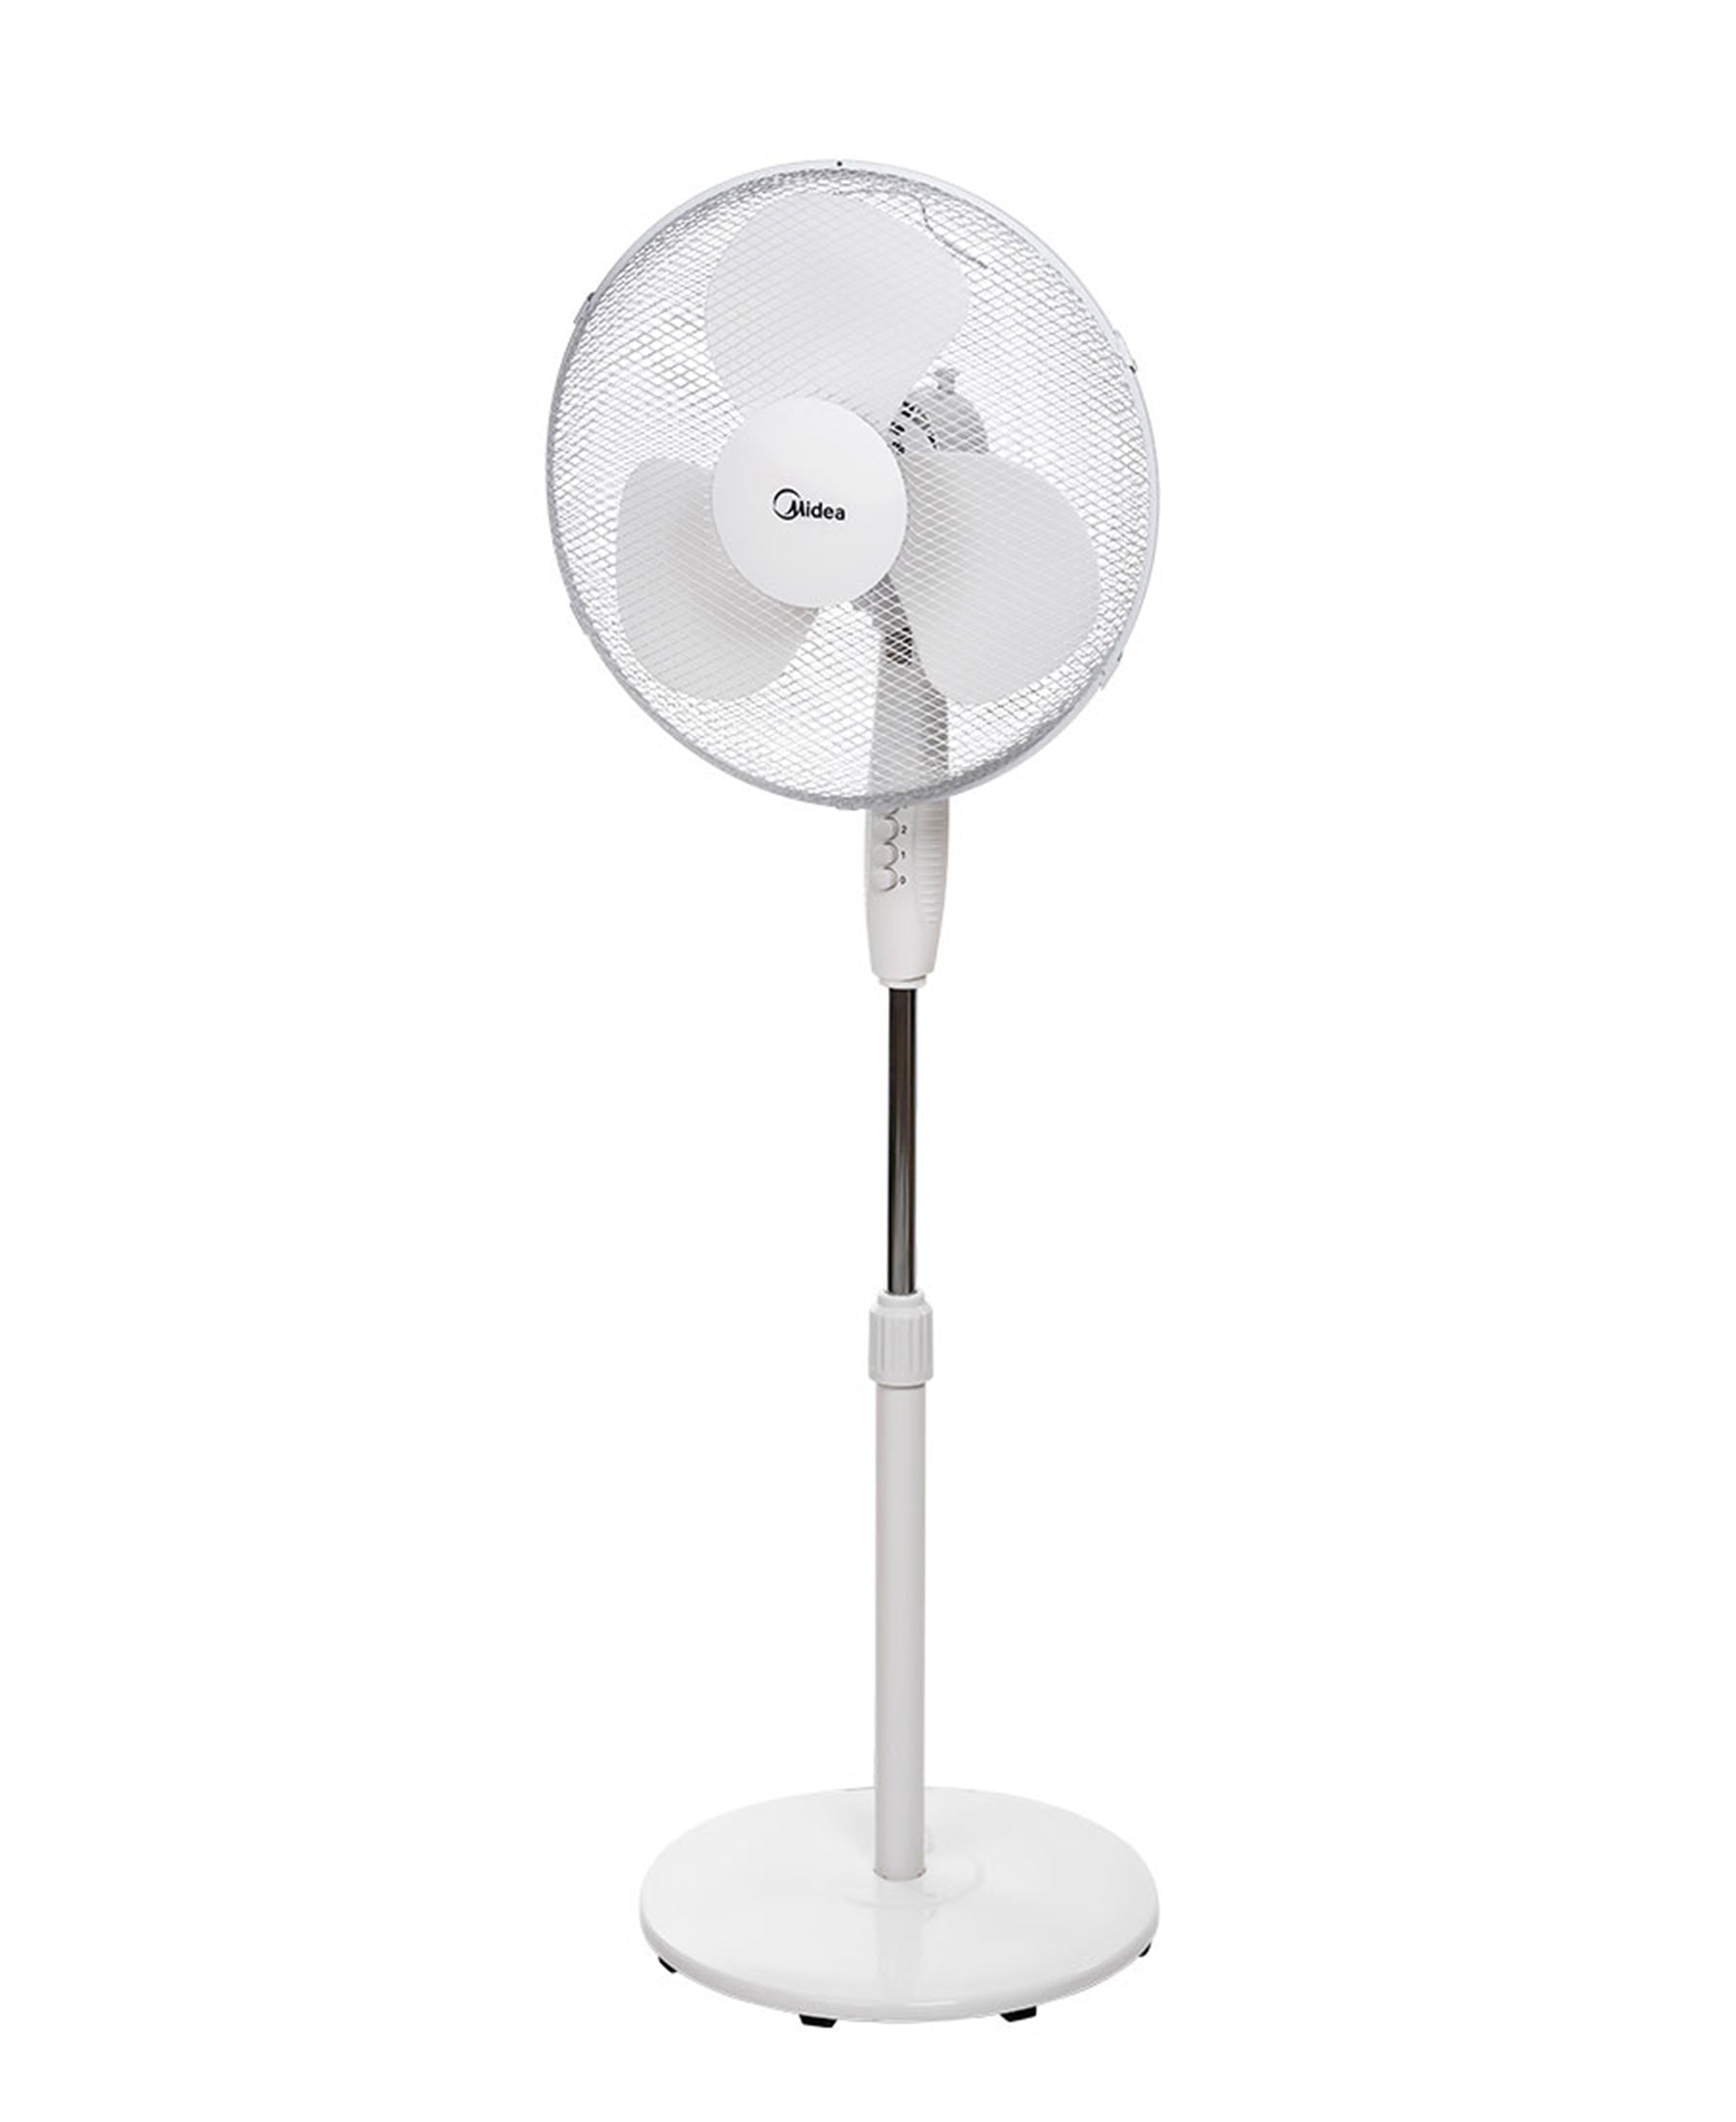 Midea 16'' Pedestal Fan - White